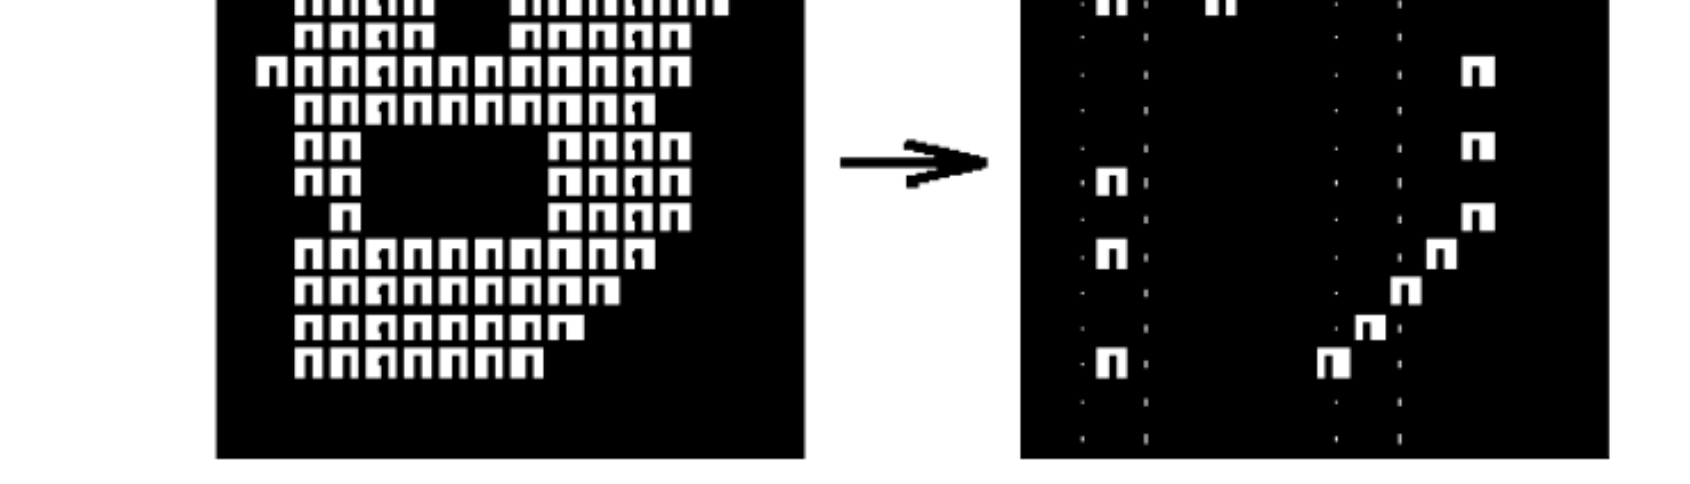 pixels della immagine, allora il pixel corrispondente alla posizione dell